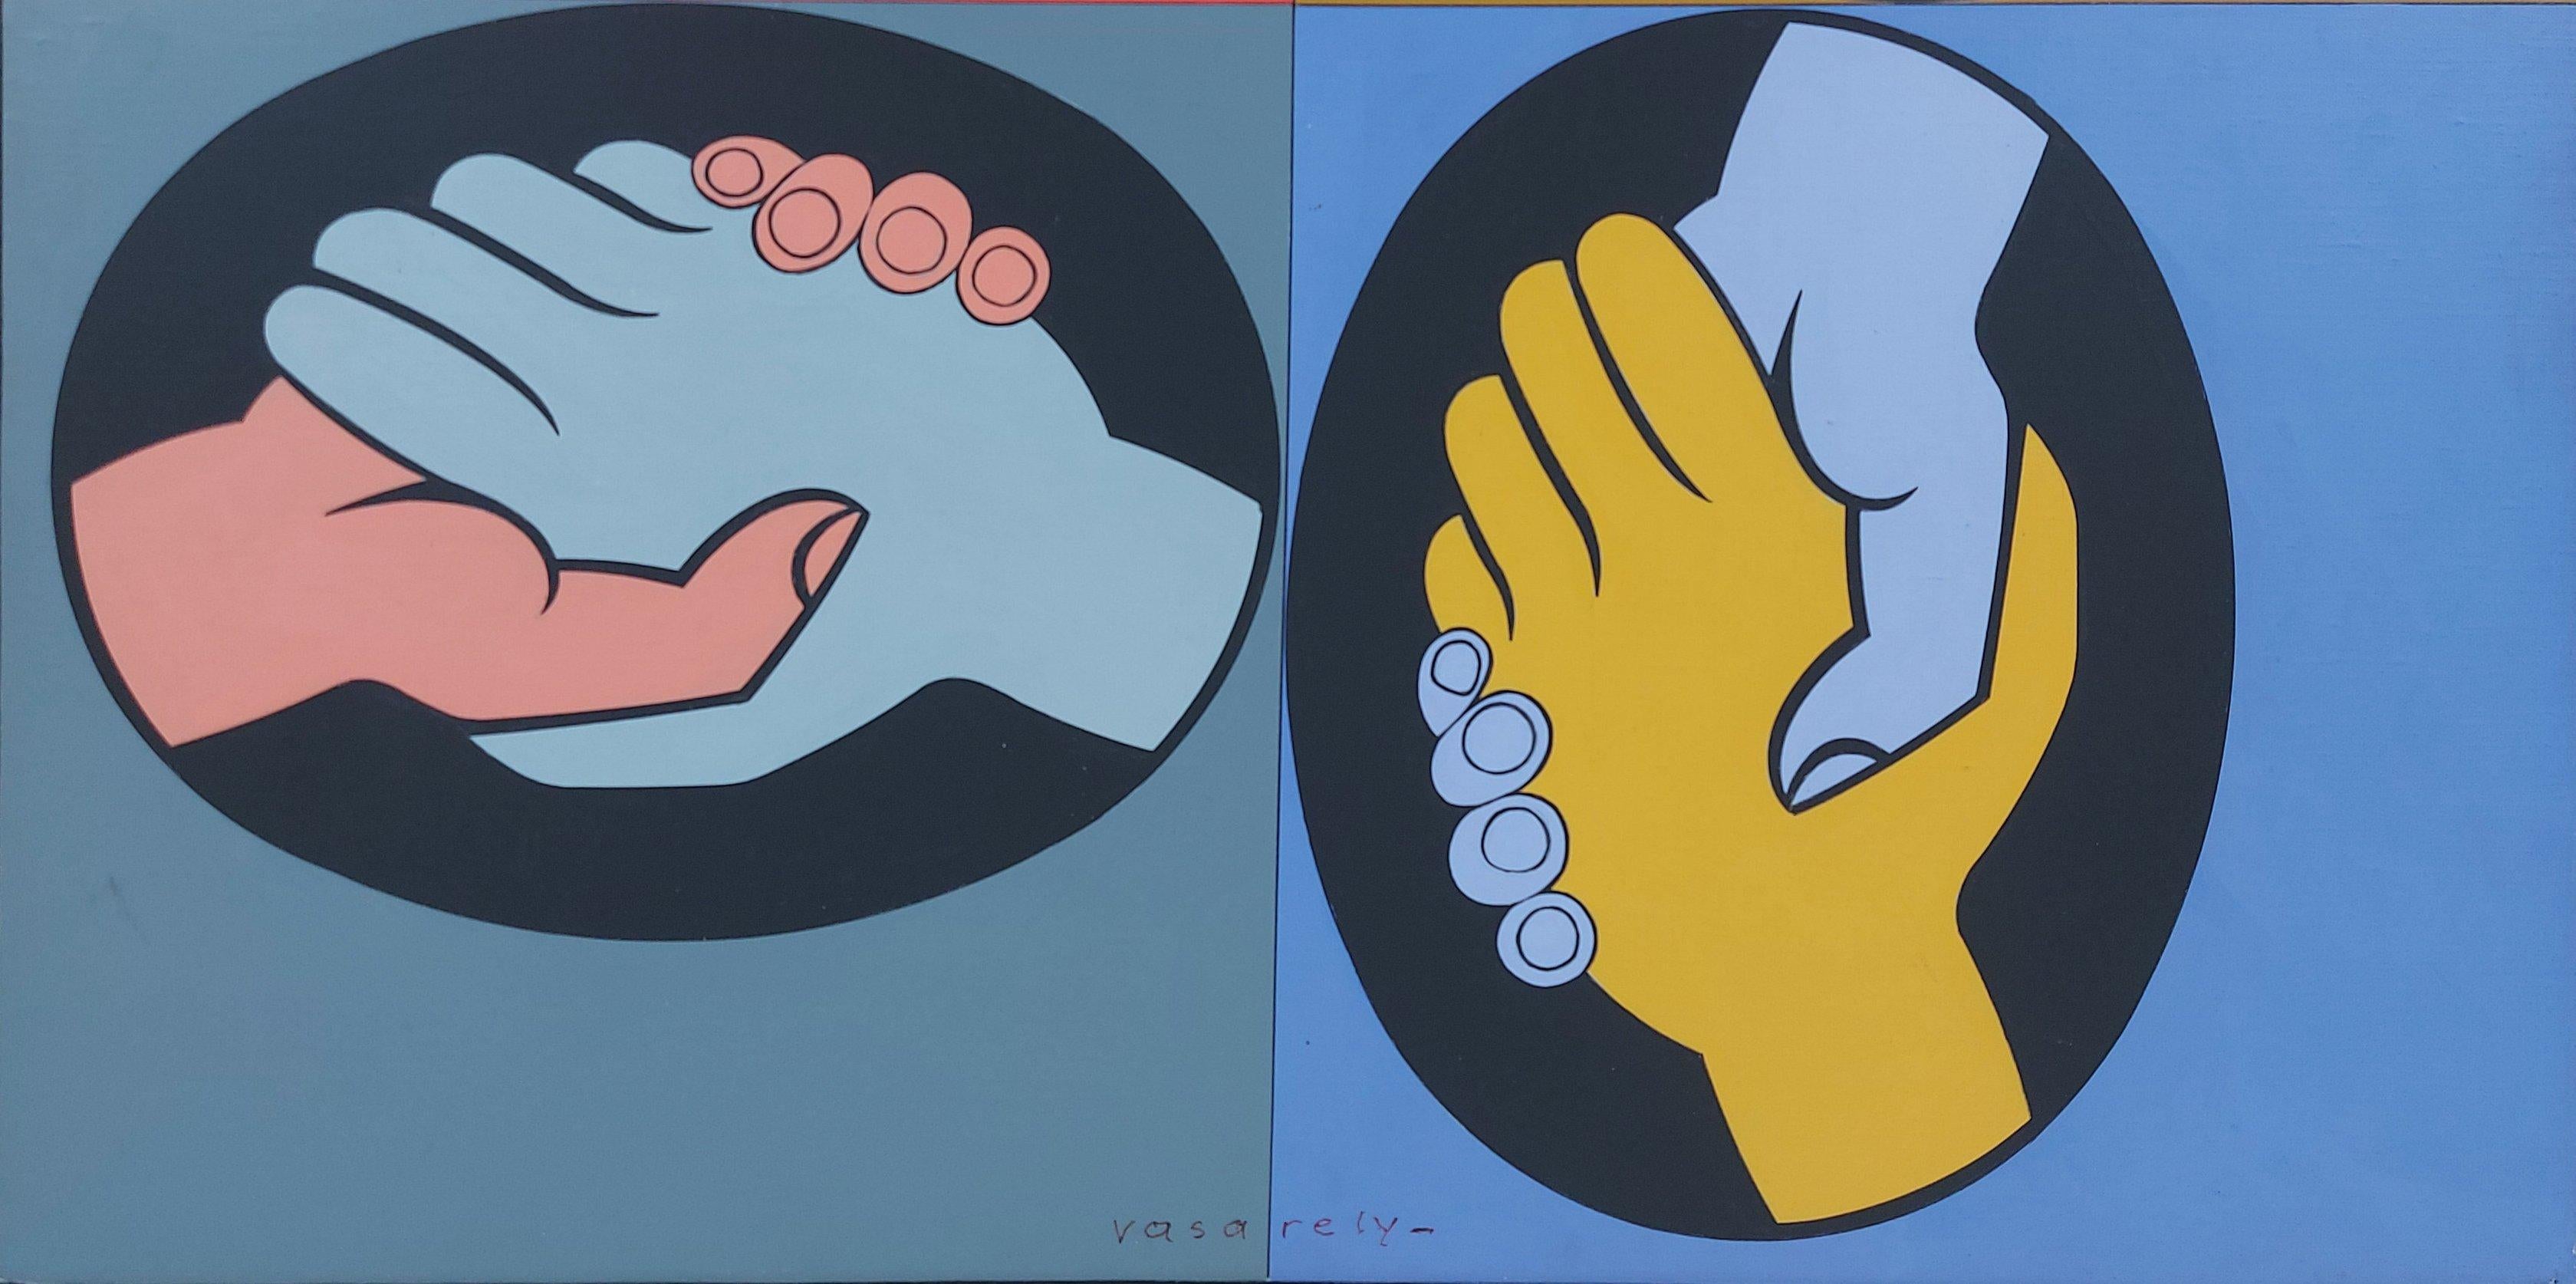 World Friendship - Peinture d'art acrylique originale OP, signée à la main - 1987 - Painting de Victor Vasarely